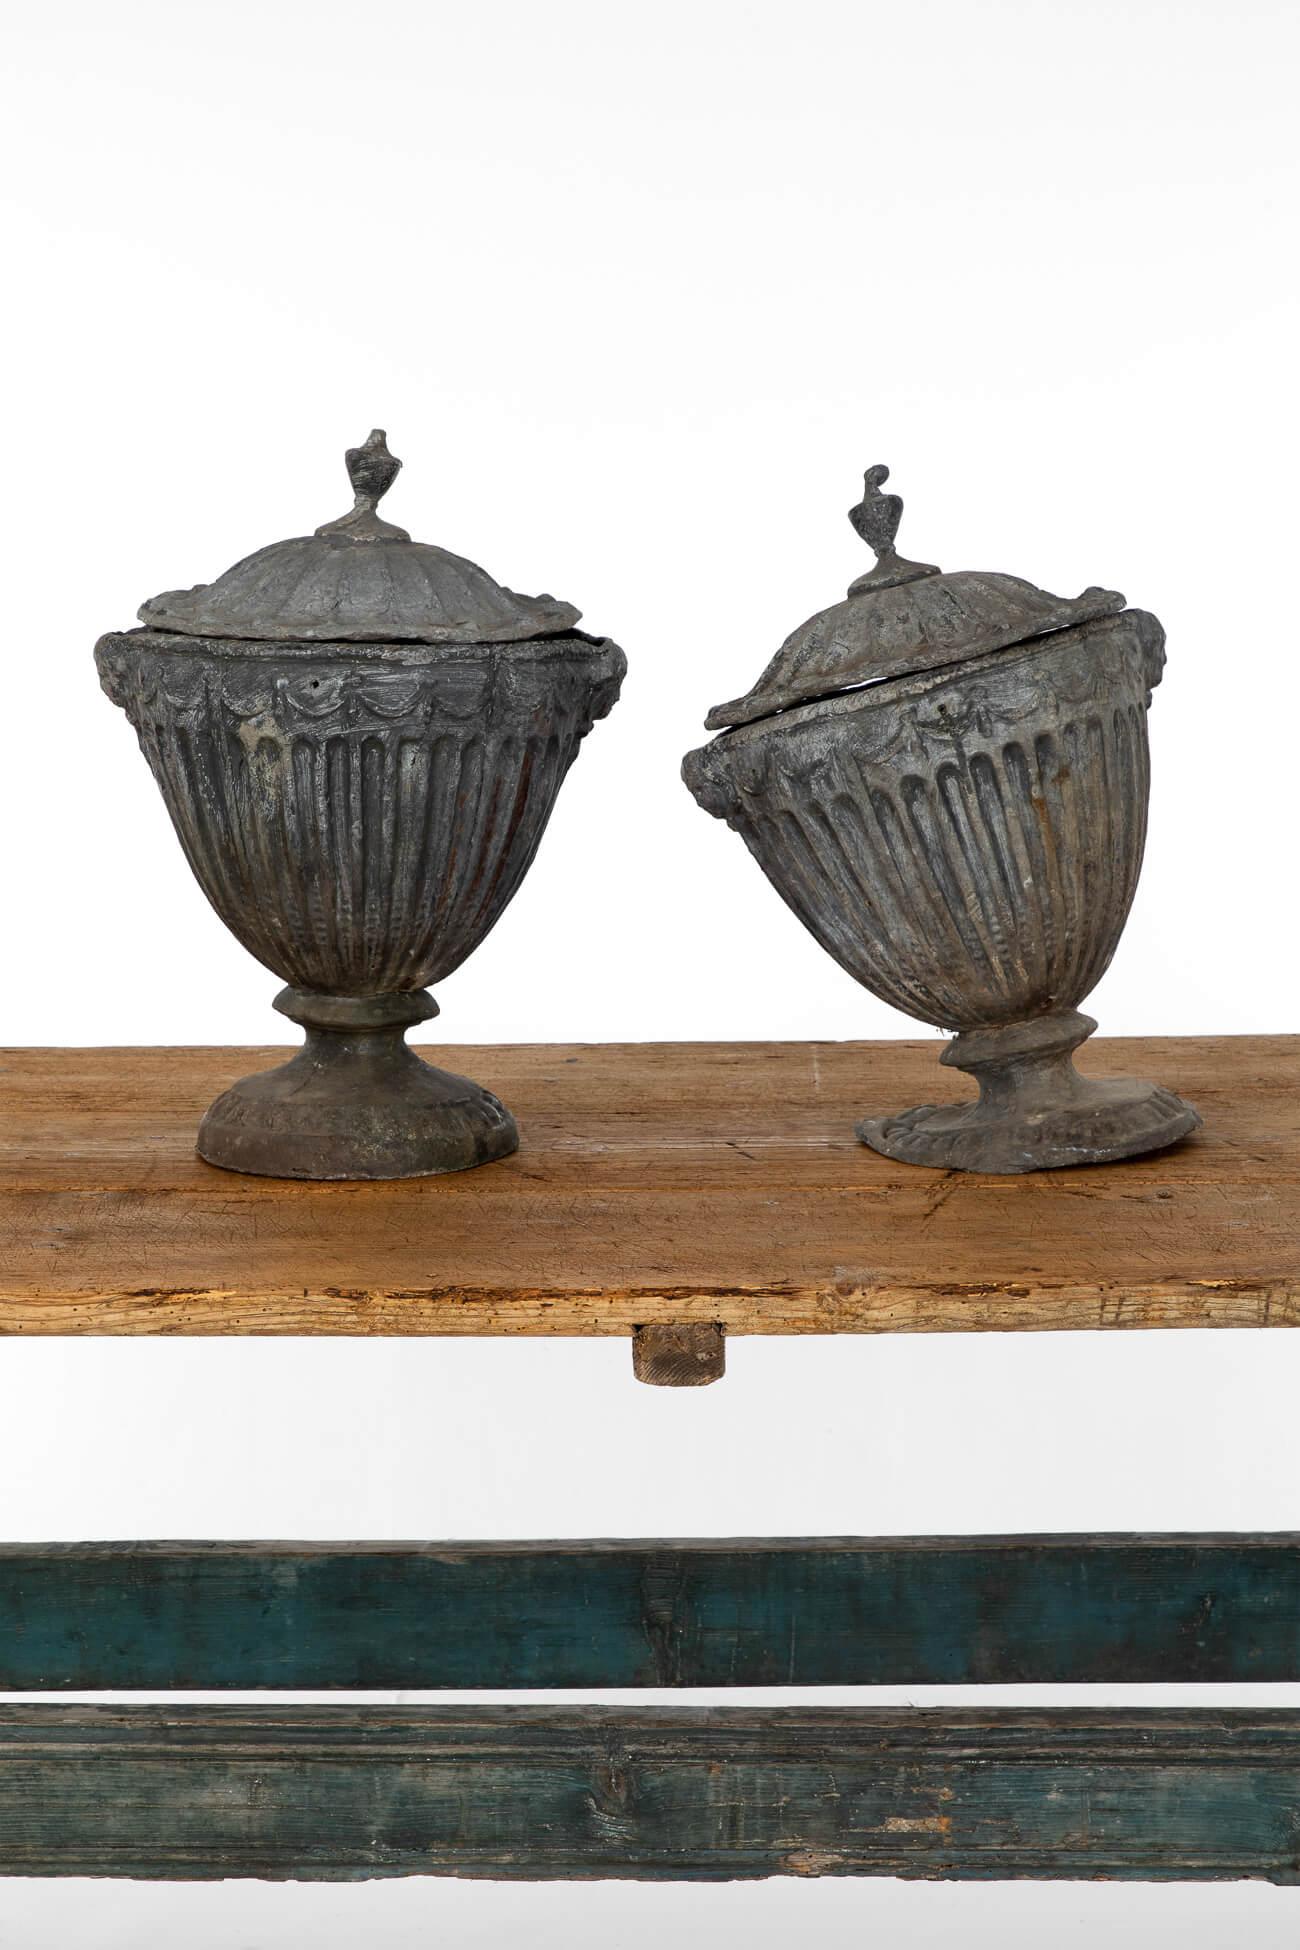 Ein fabelhaftes Paar von Blei-Urnen nach dem Entwurf des britischen georgianischen Architekten Robert Adam.

Neoklassizistisches Design mit kanneliertem Dekor an den Seiten und am Sockel.

Die Urnen sind schwer beschwert, wie es den ursprünglichen